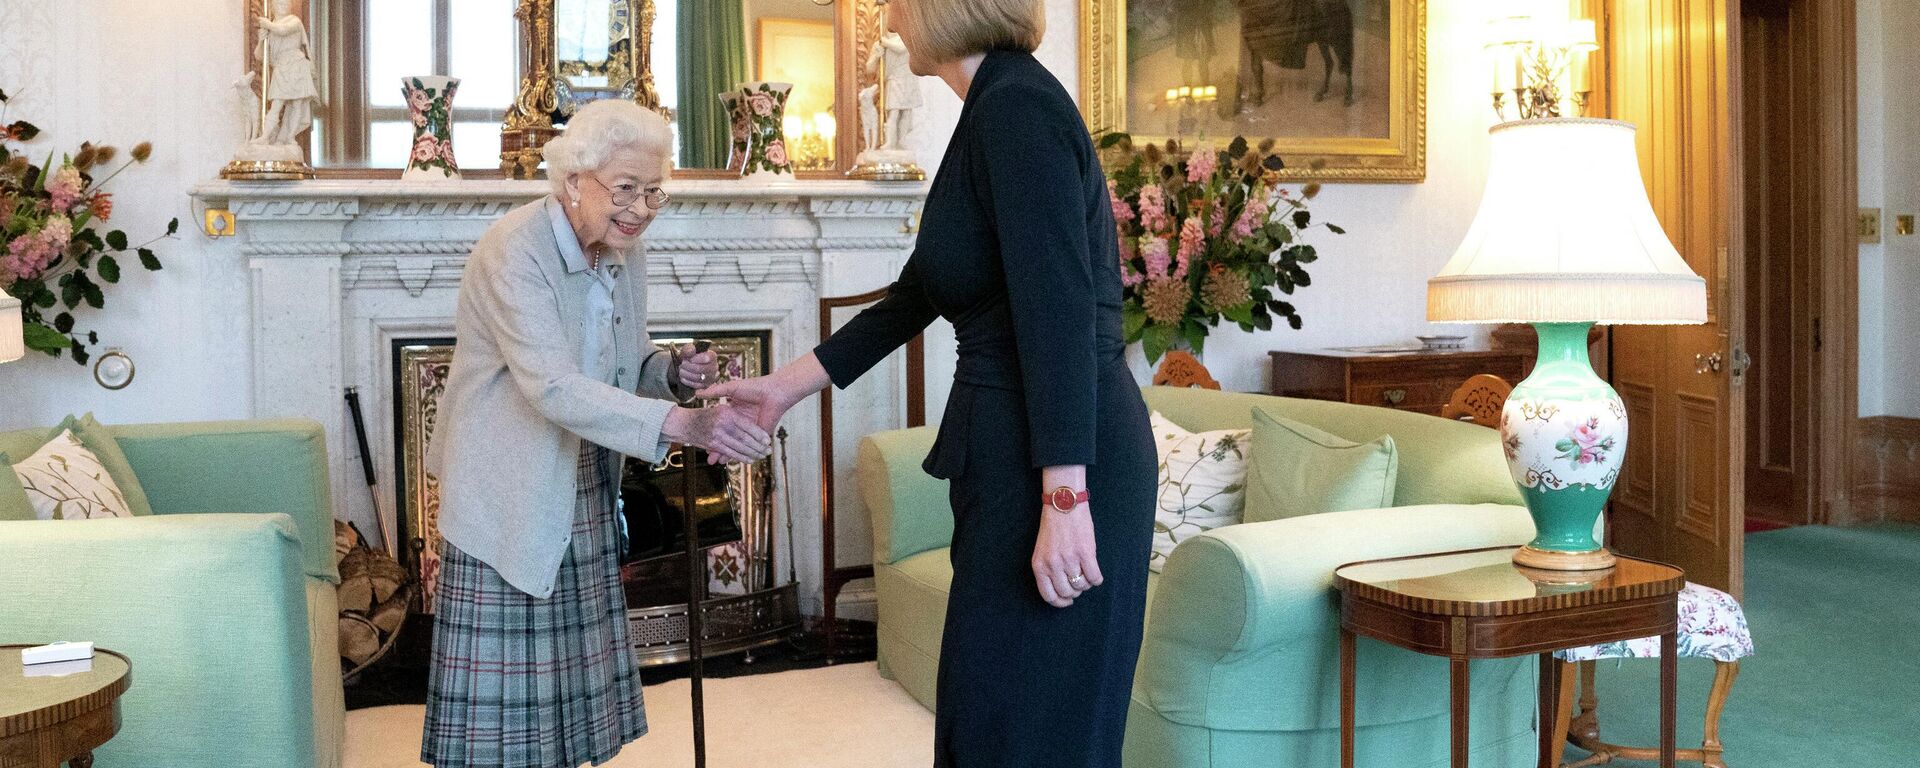 Nữ hoàng Elizabeth II tiếp Thủ tướng đắc cử Vương quốc Anh Liz Truss tại Lâu đài Balmoral, Scotland - Sputnik Việt Nam, 1920, 09.09.2022